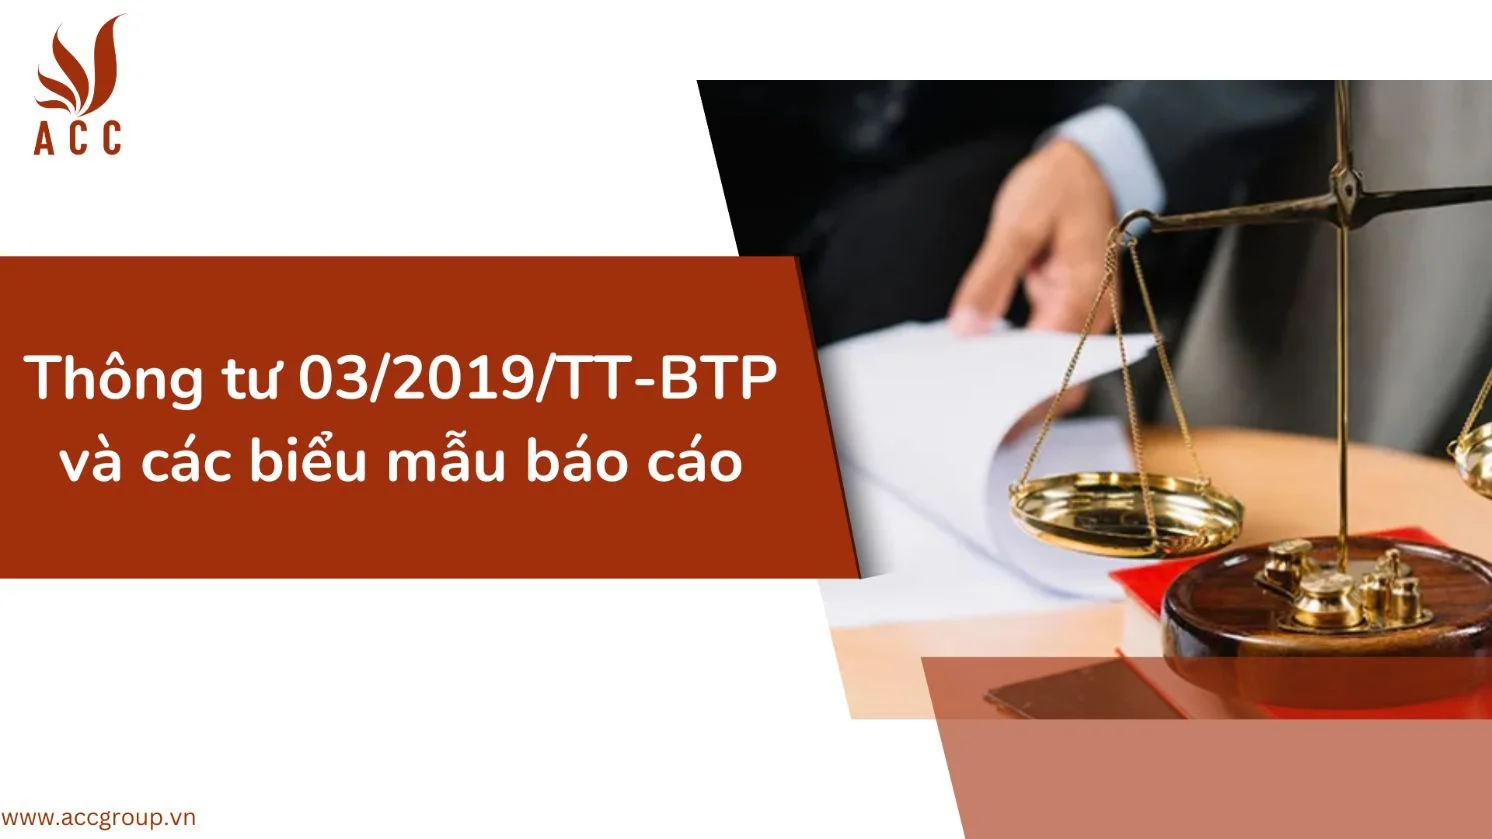 Thông tư 03/2019/TT-BTP và các biểu mẫu báo cáo